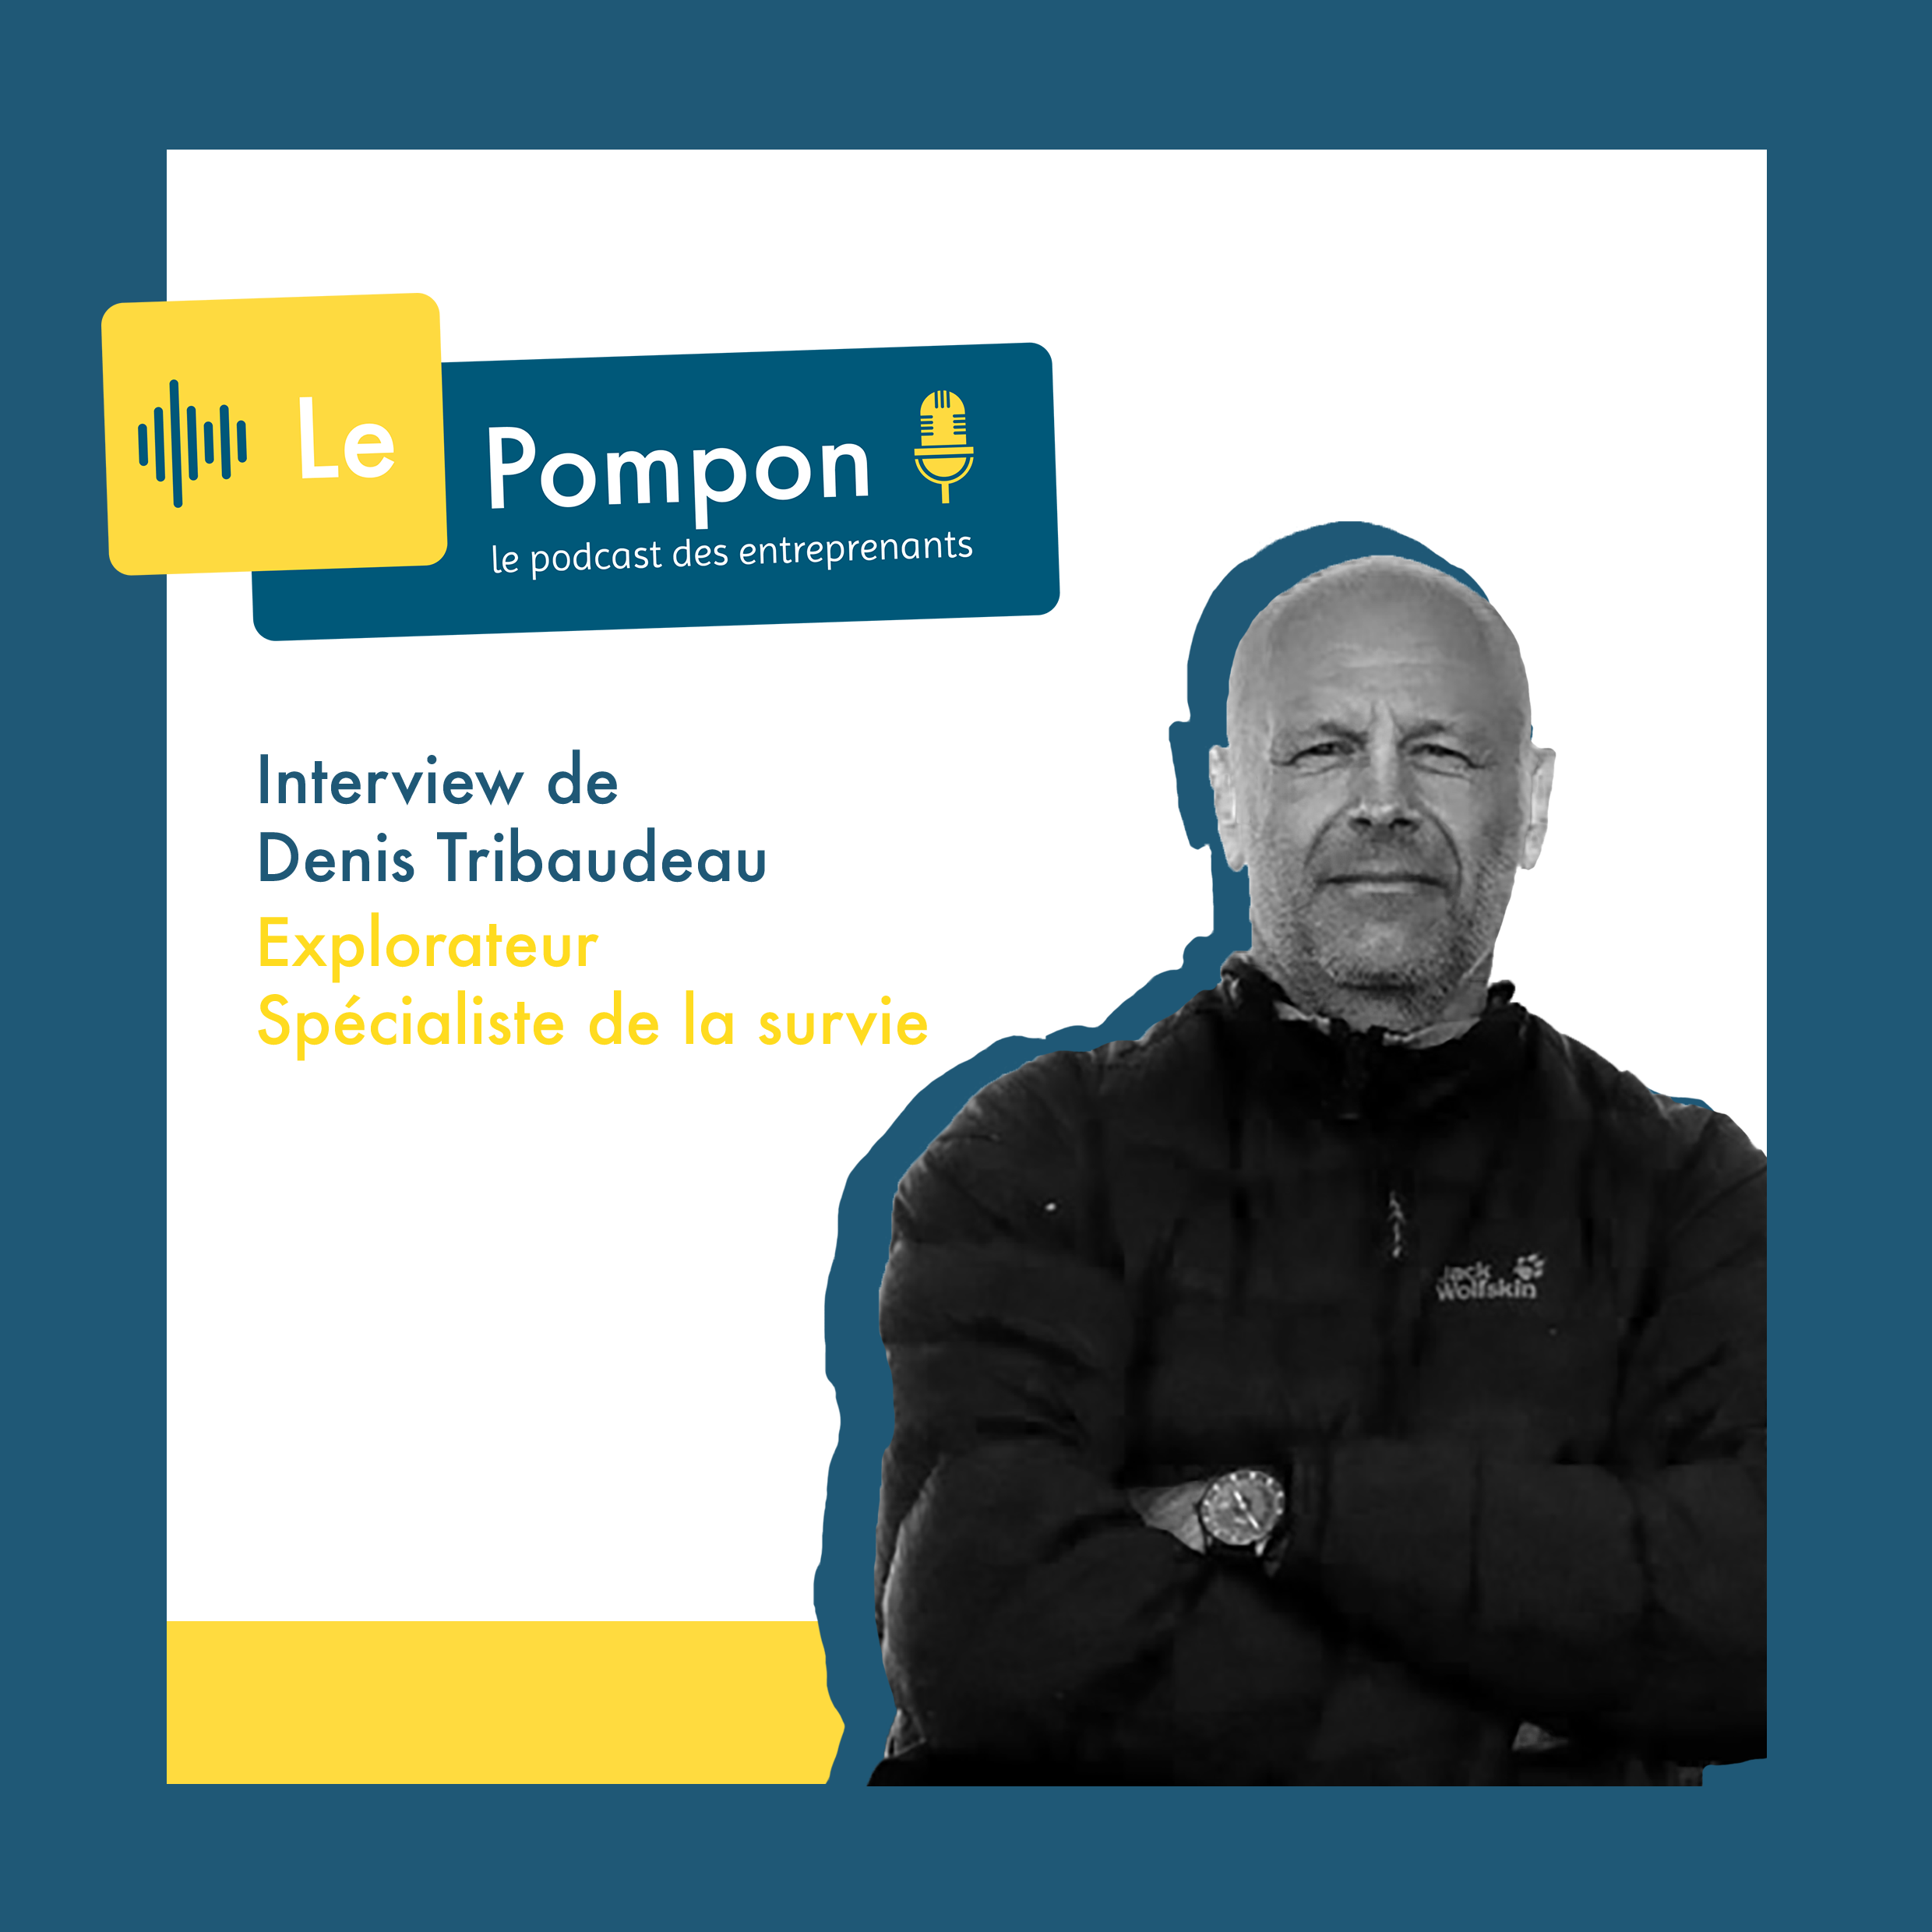 Illustration de l'épisode 42 du Podcast Le Pompon : Denis Tribaudeau, Explorateur